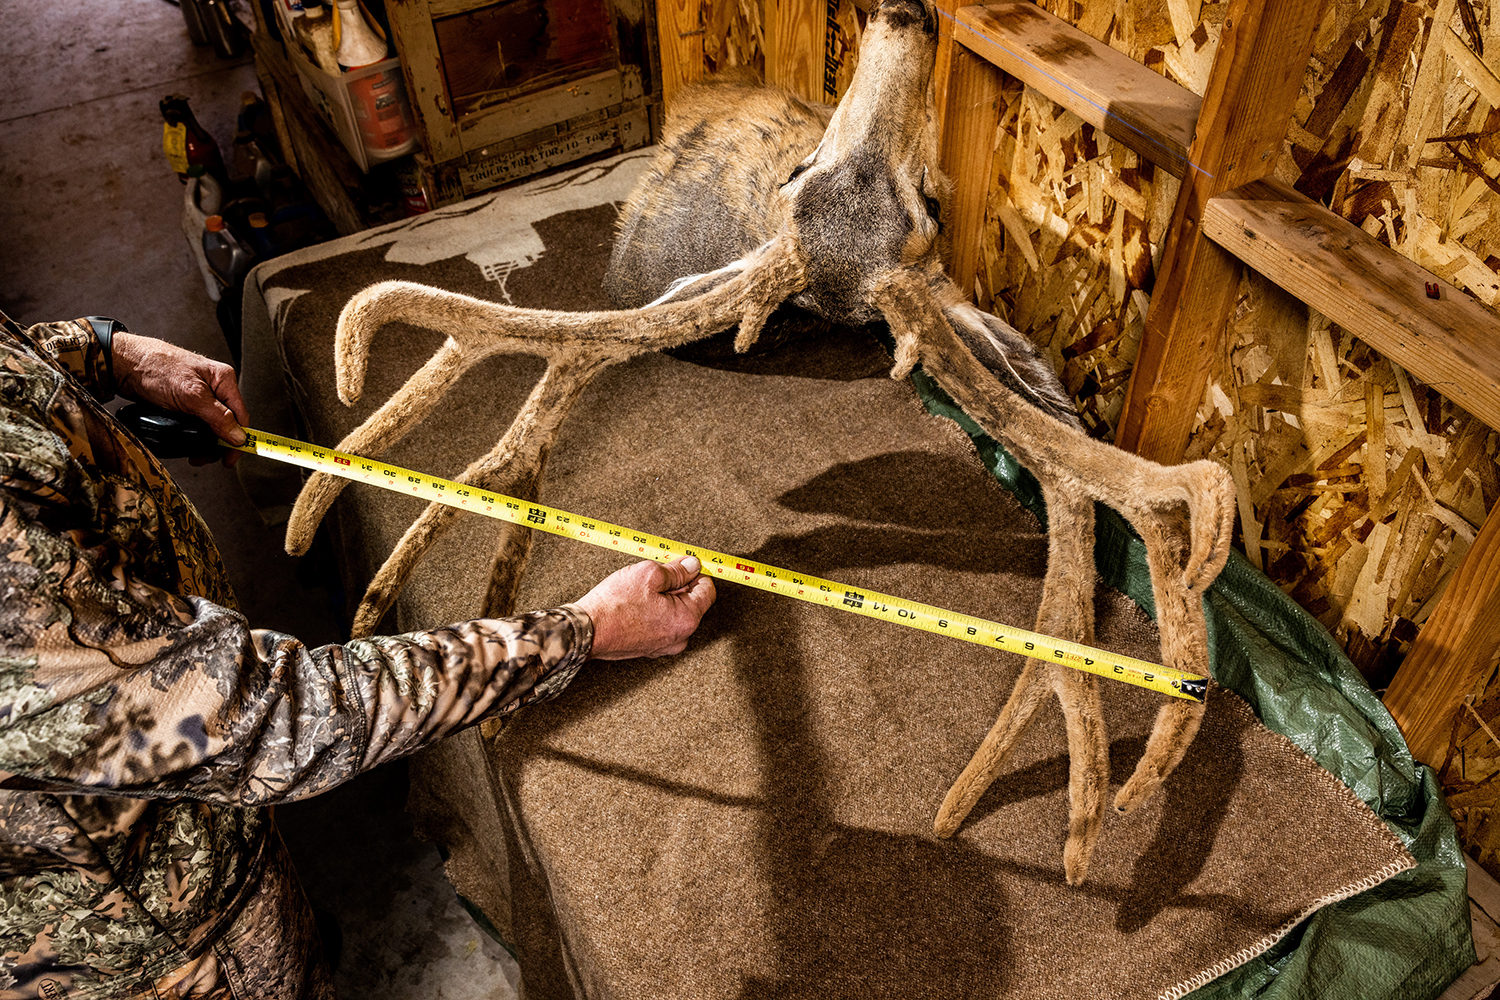 Measuring mule deer antlers